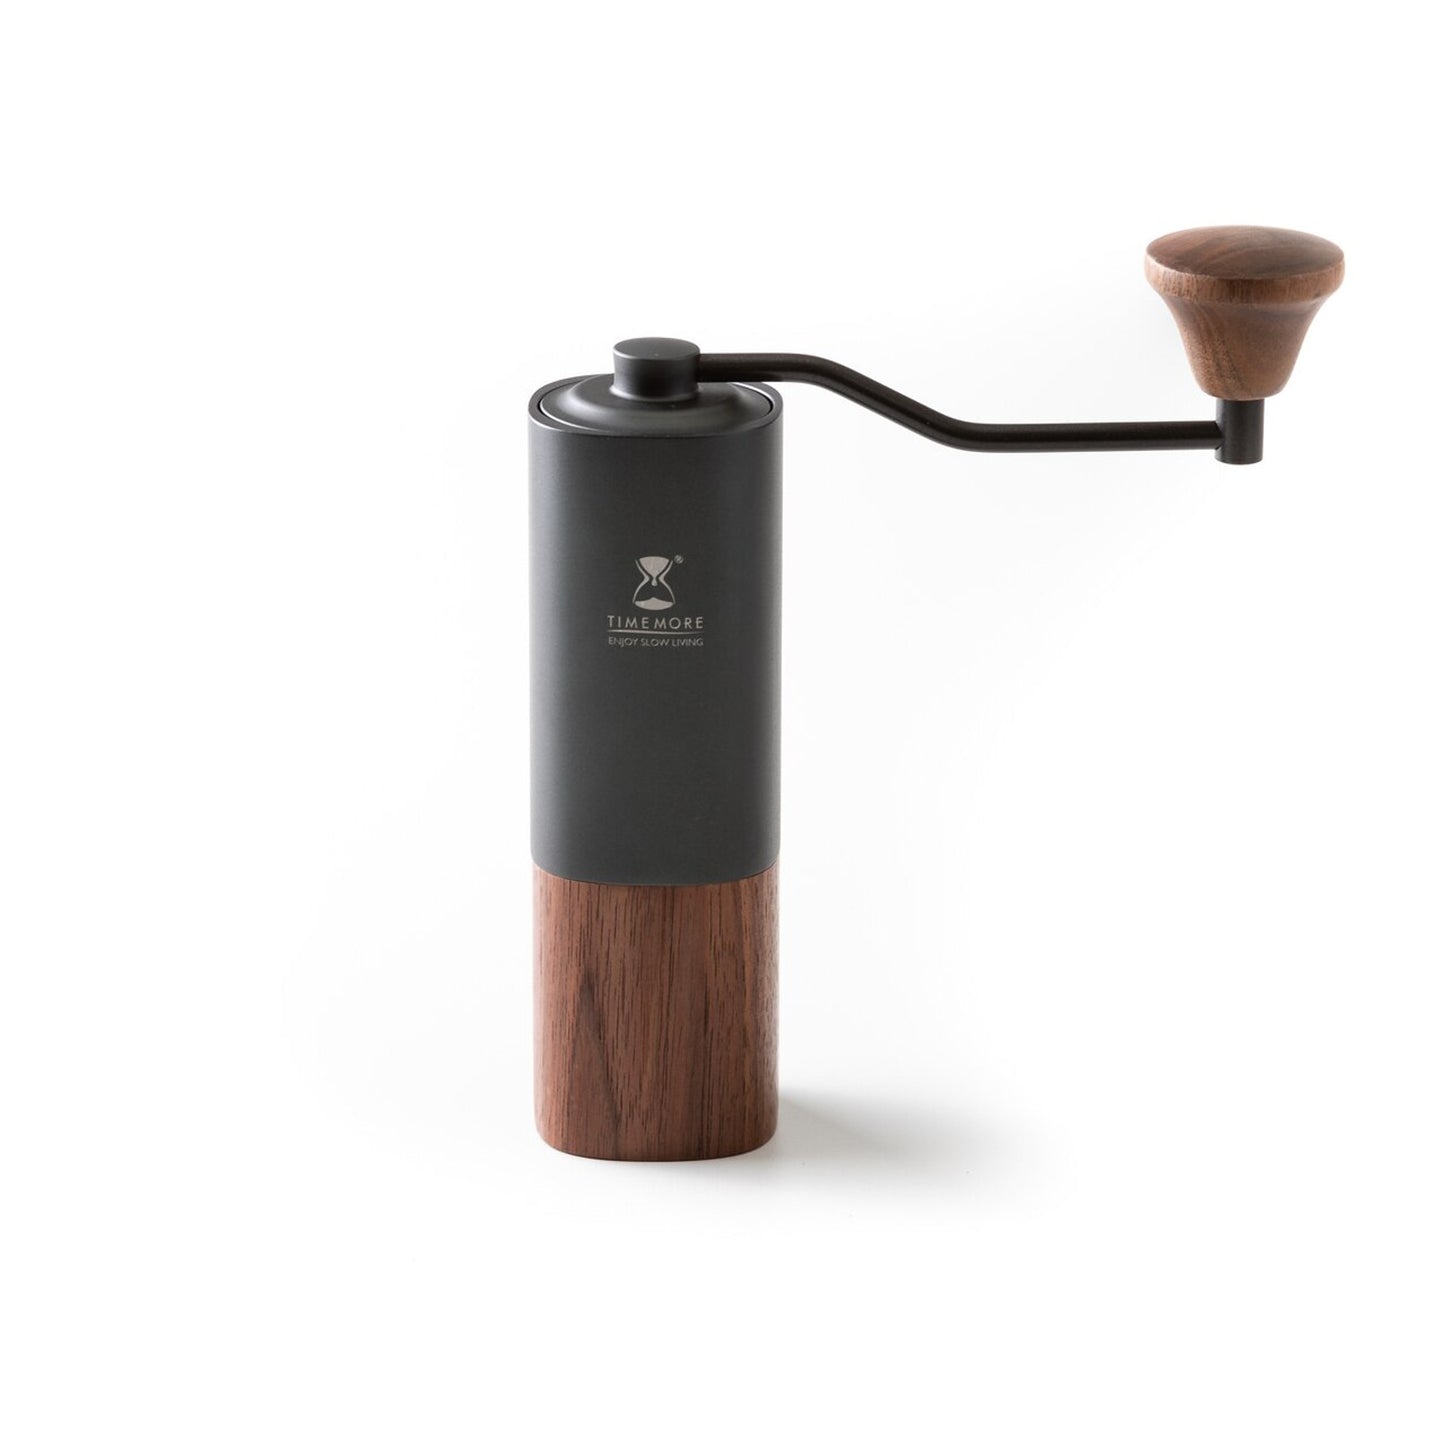 Timemore G1 Plus chestnut black hand grinder, grind coffee, best coffee grinder